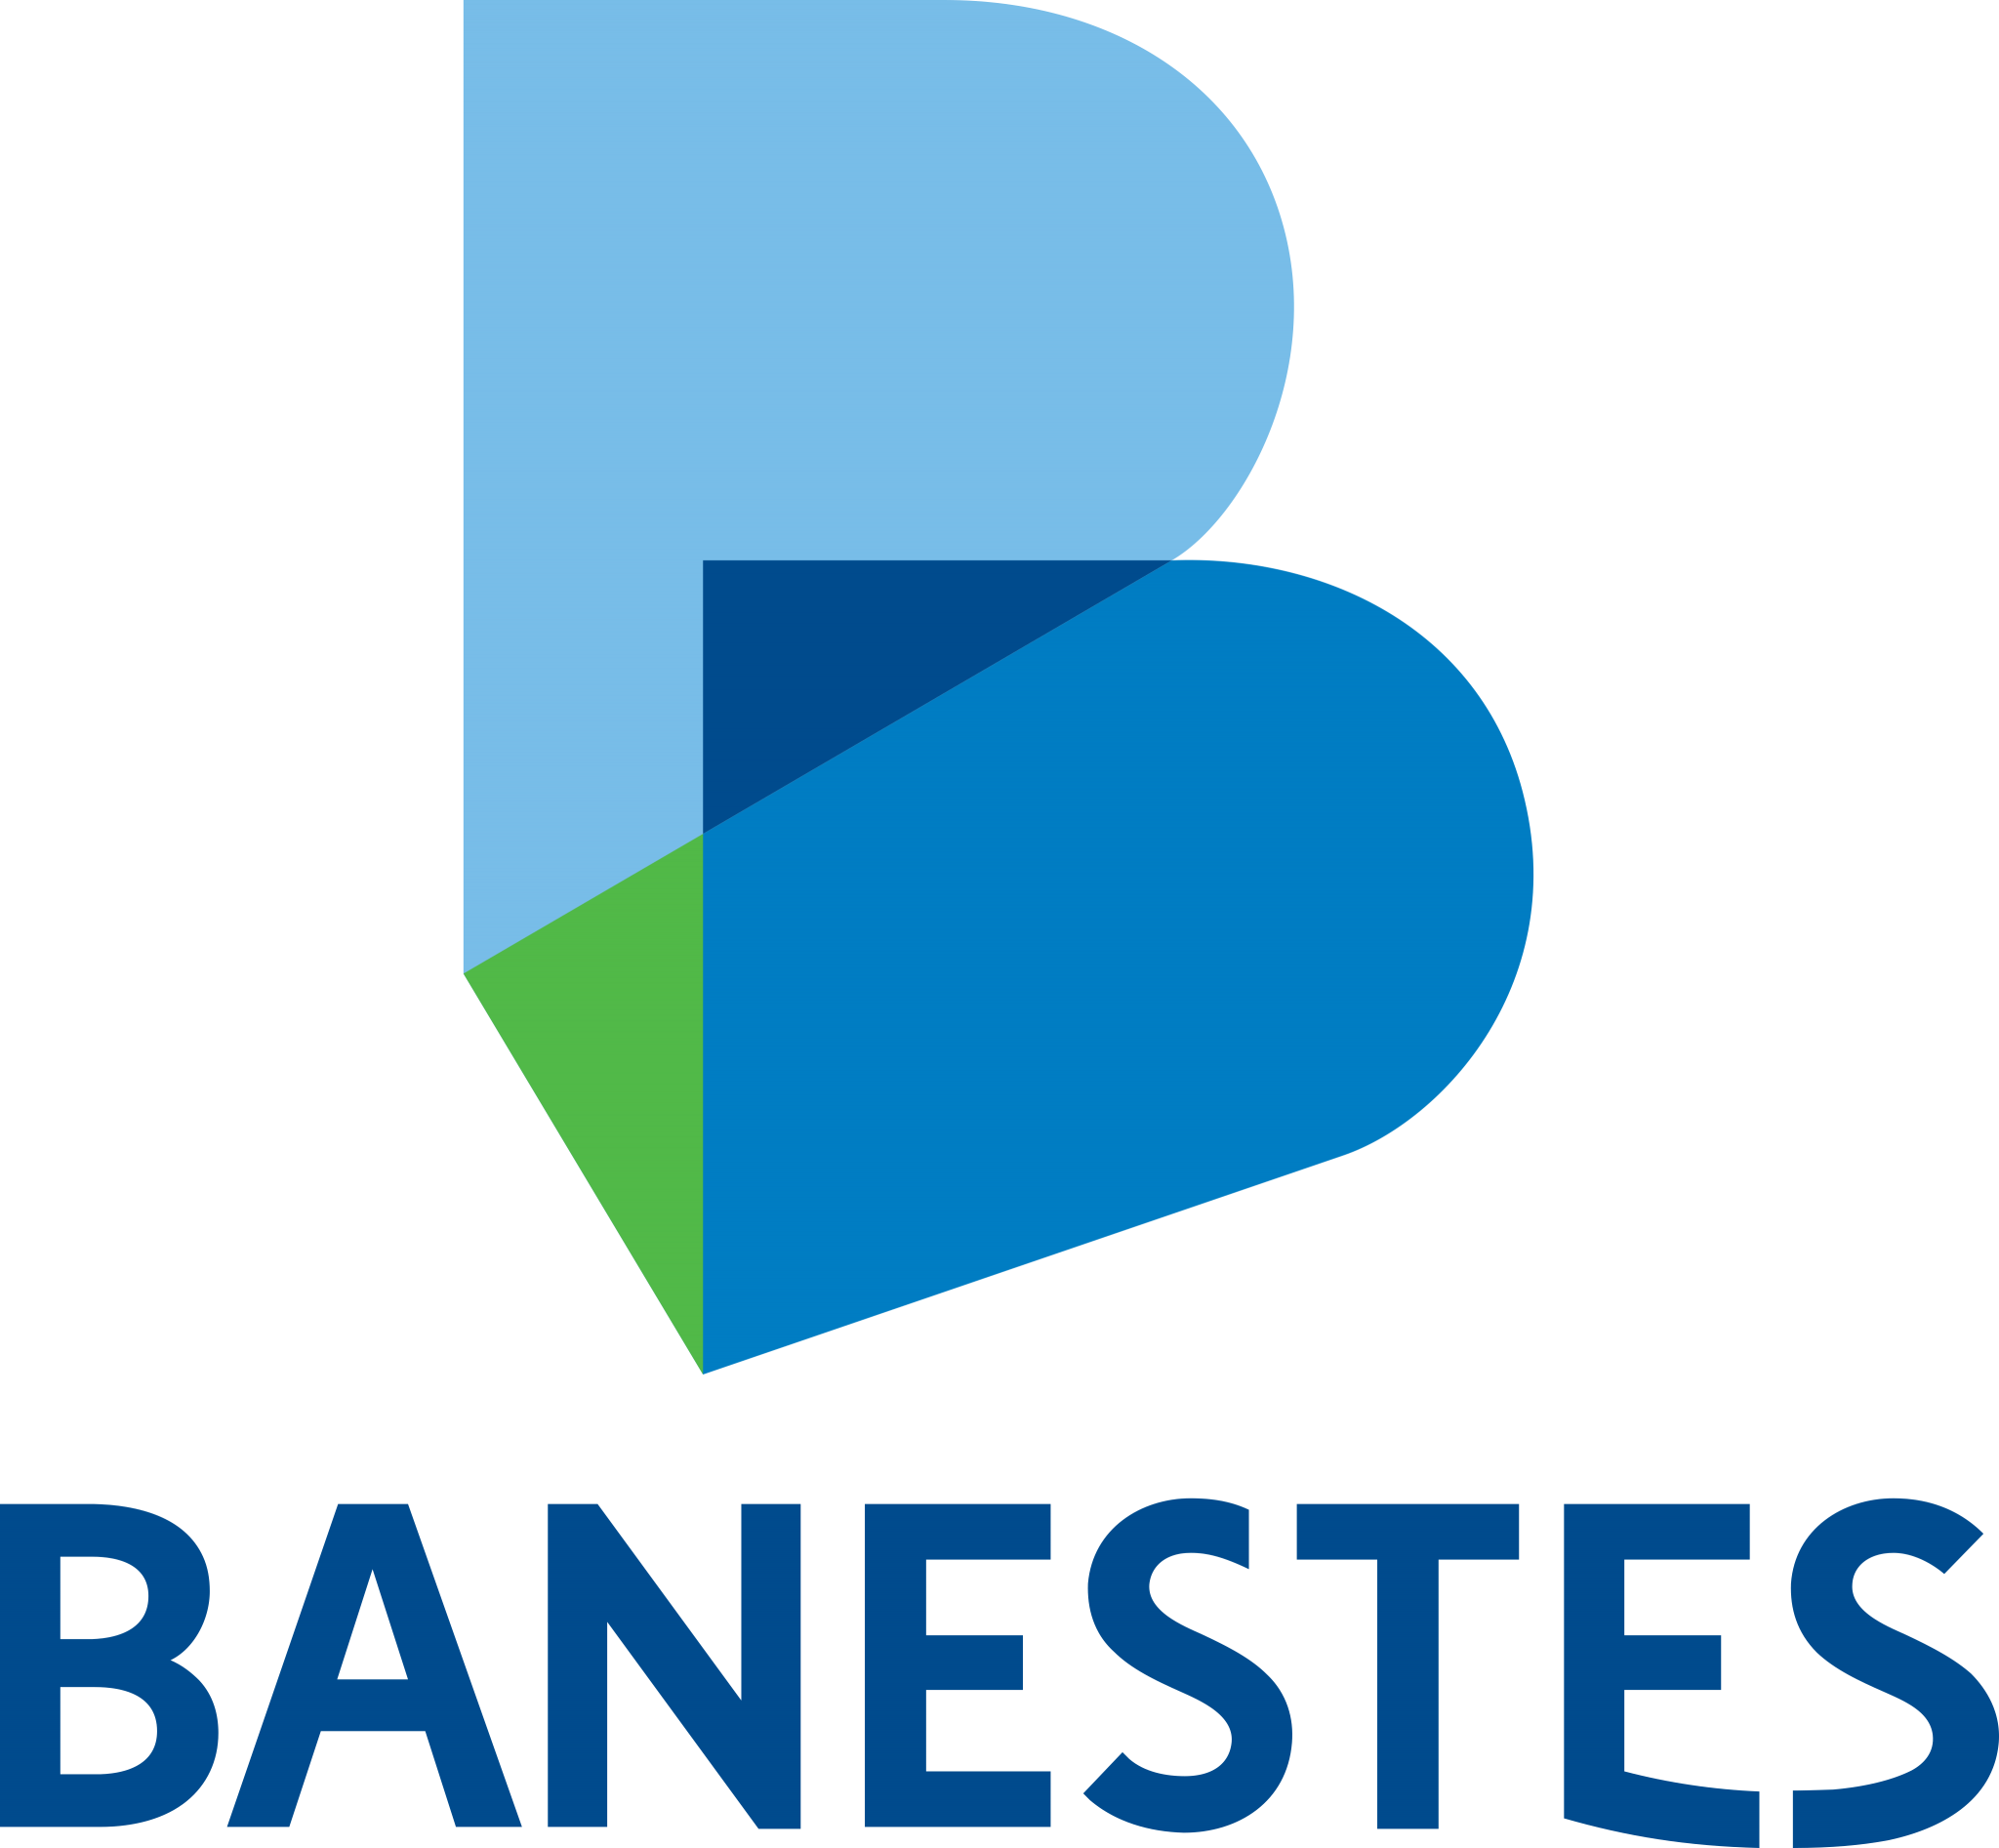 Banestes Logo - PNG e Vetor - Download de Logo